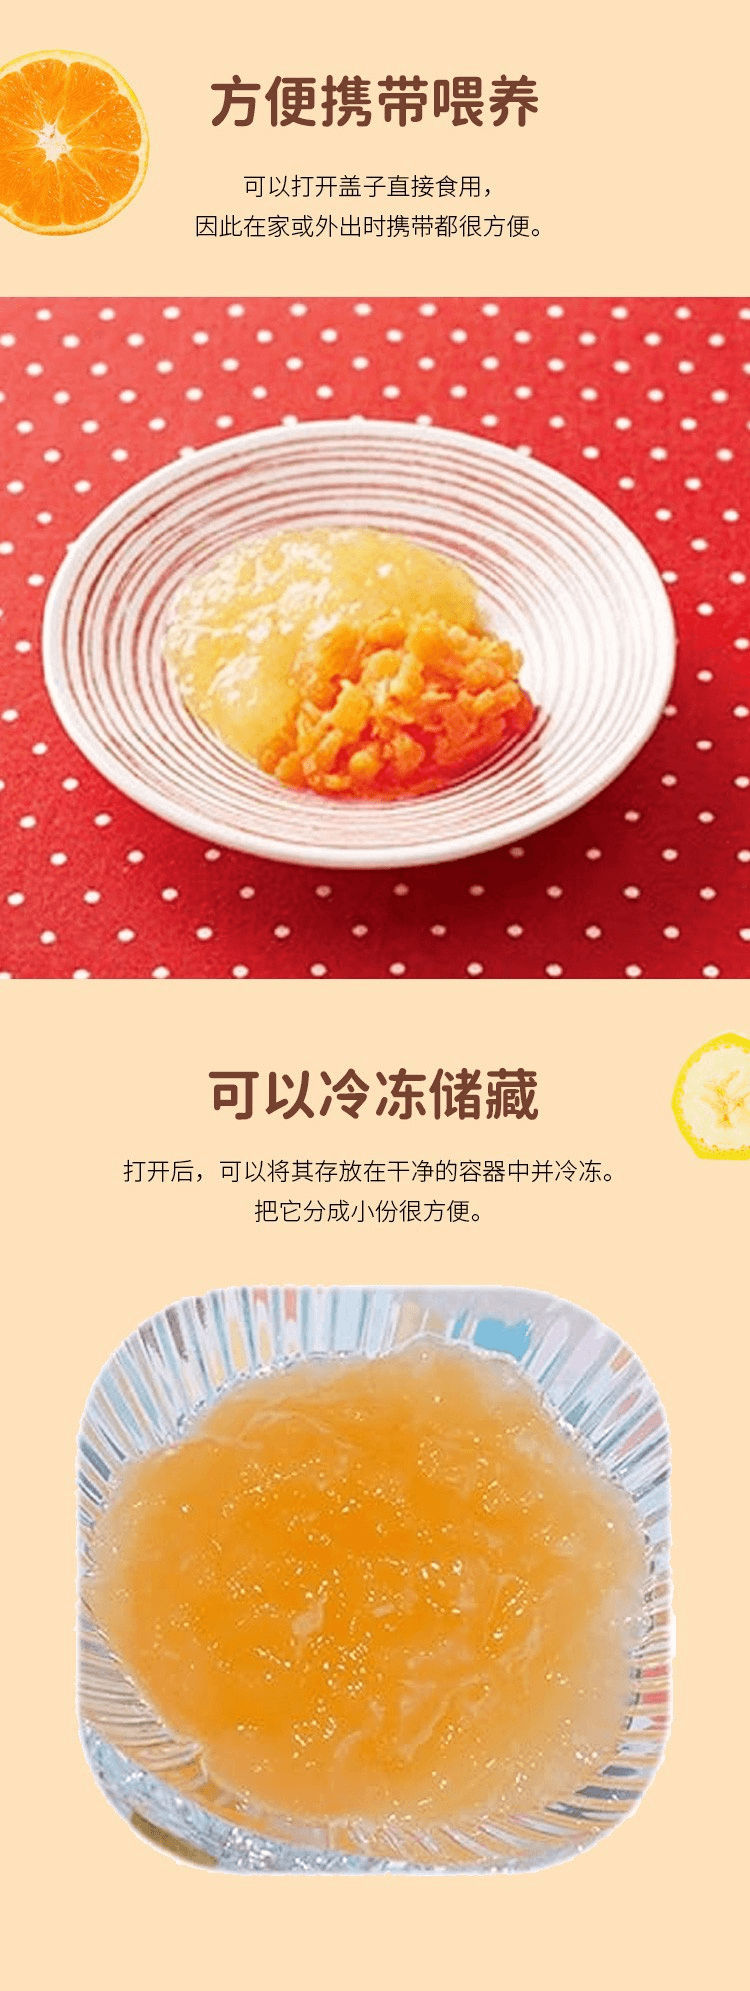 【日本直效郵件】Kewpie丘比 嬰兒寶寶輔食 綜合水果泥 70g